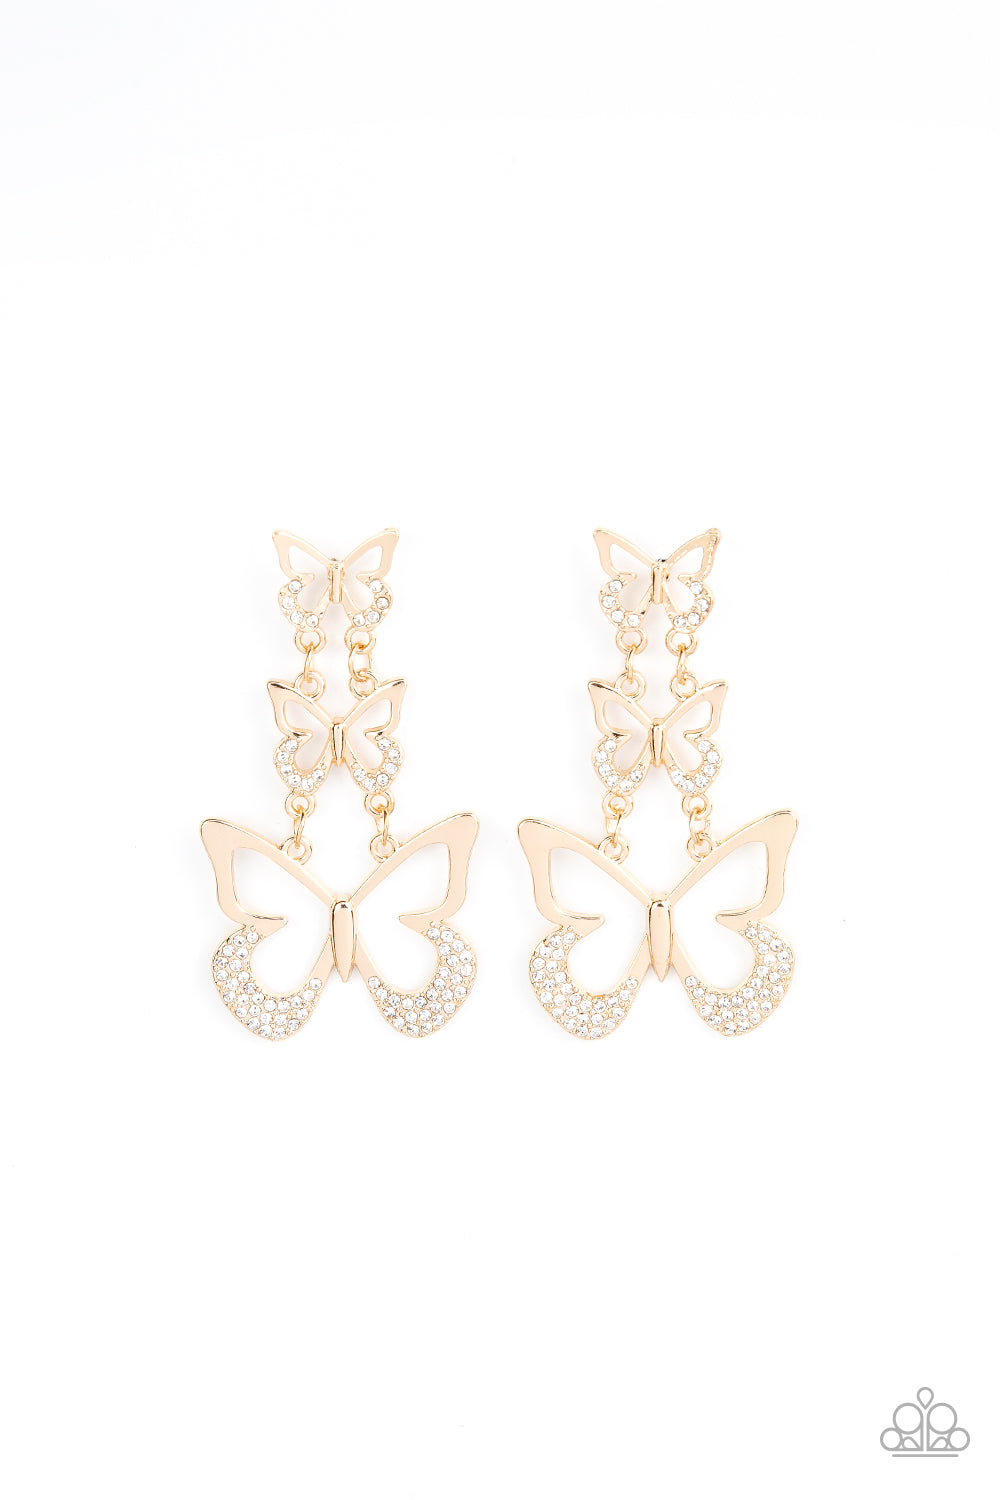 Flamboyant Flutter - Gold post butterfly earrings